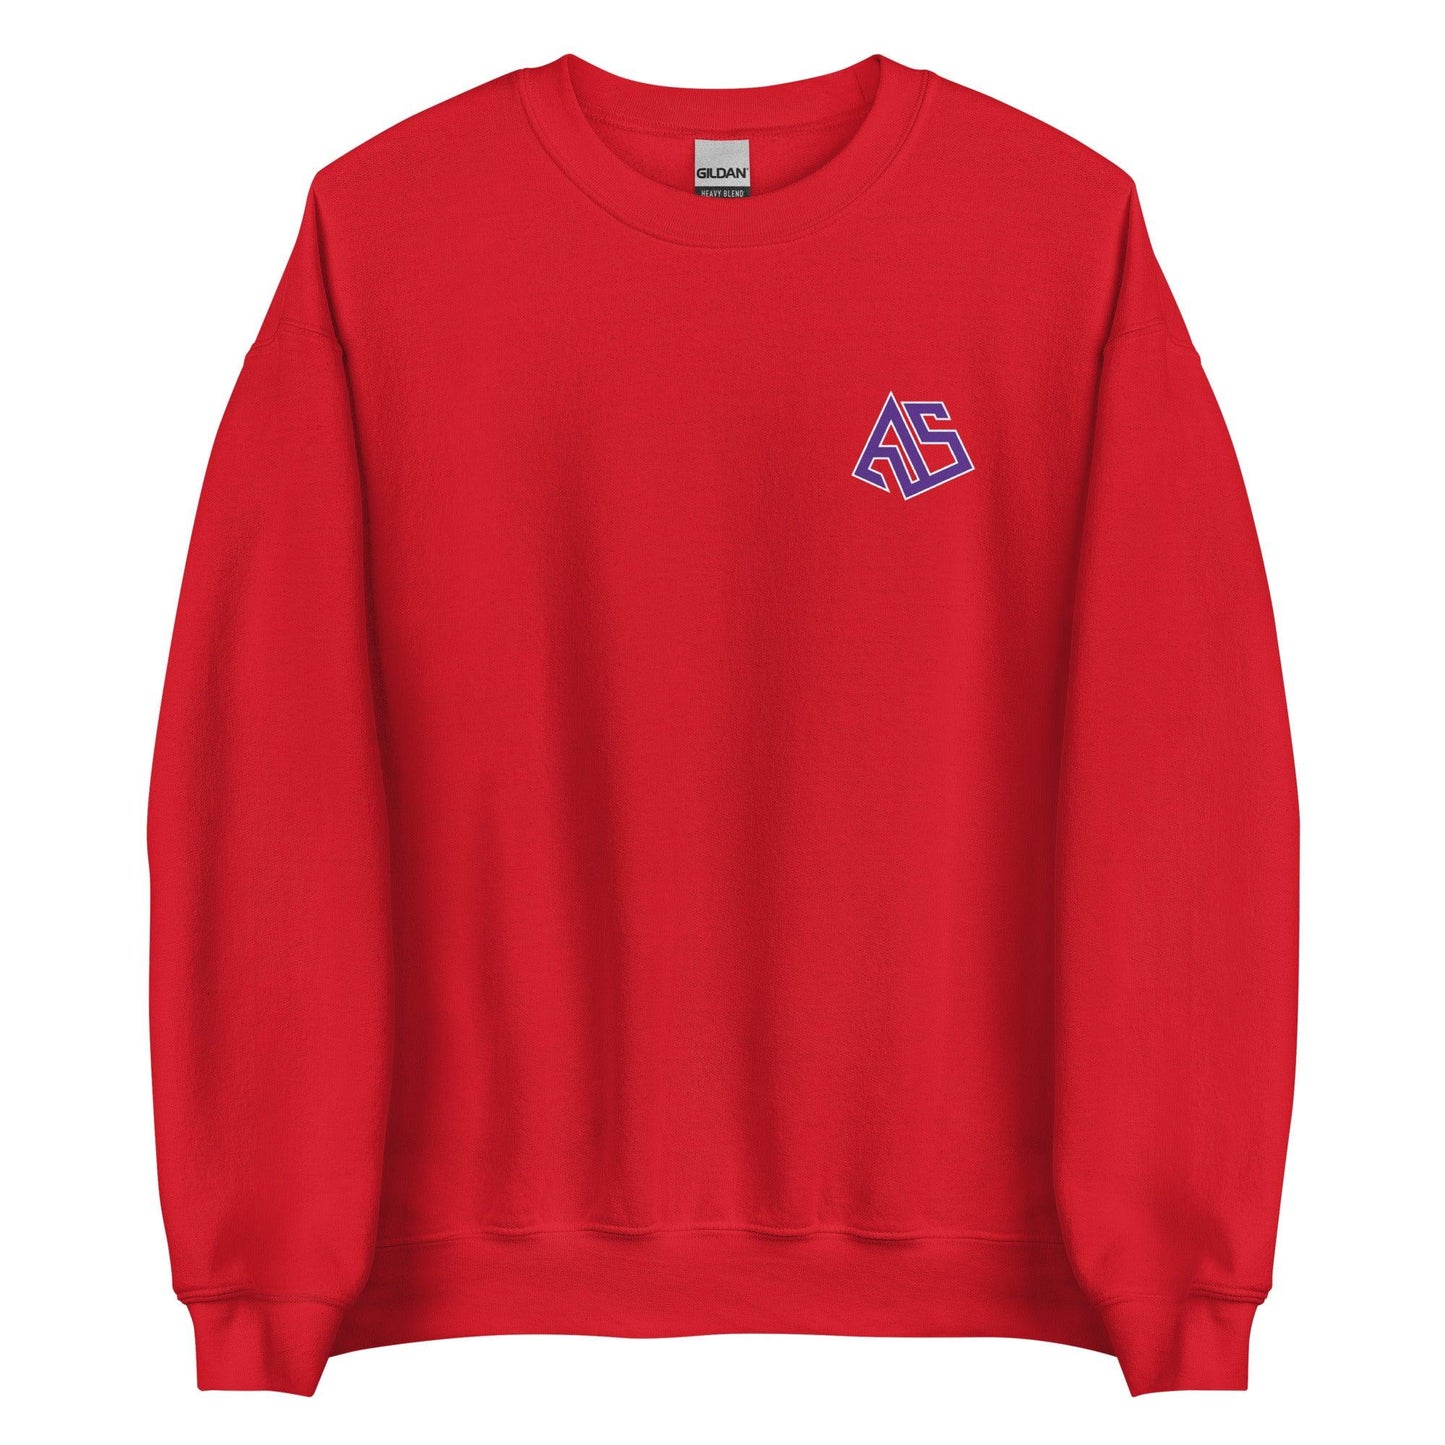 Asa Newsom "Essential" Sweatshirt - Fan Arch